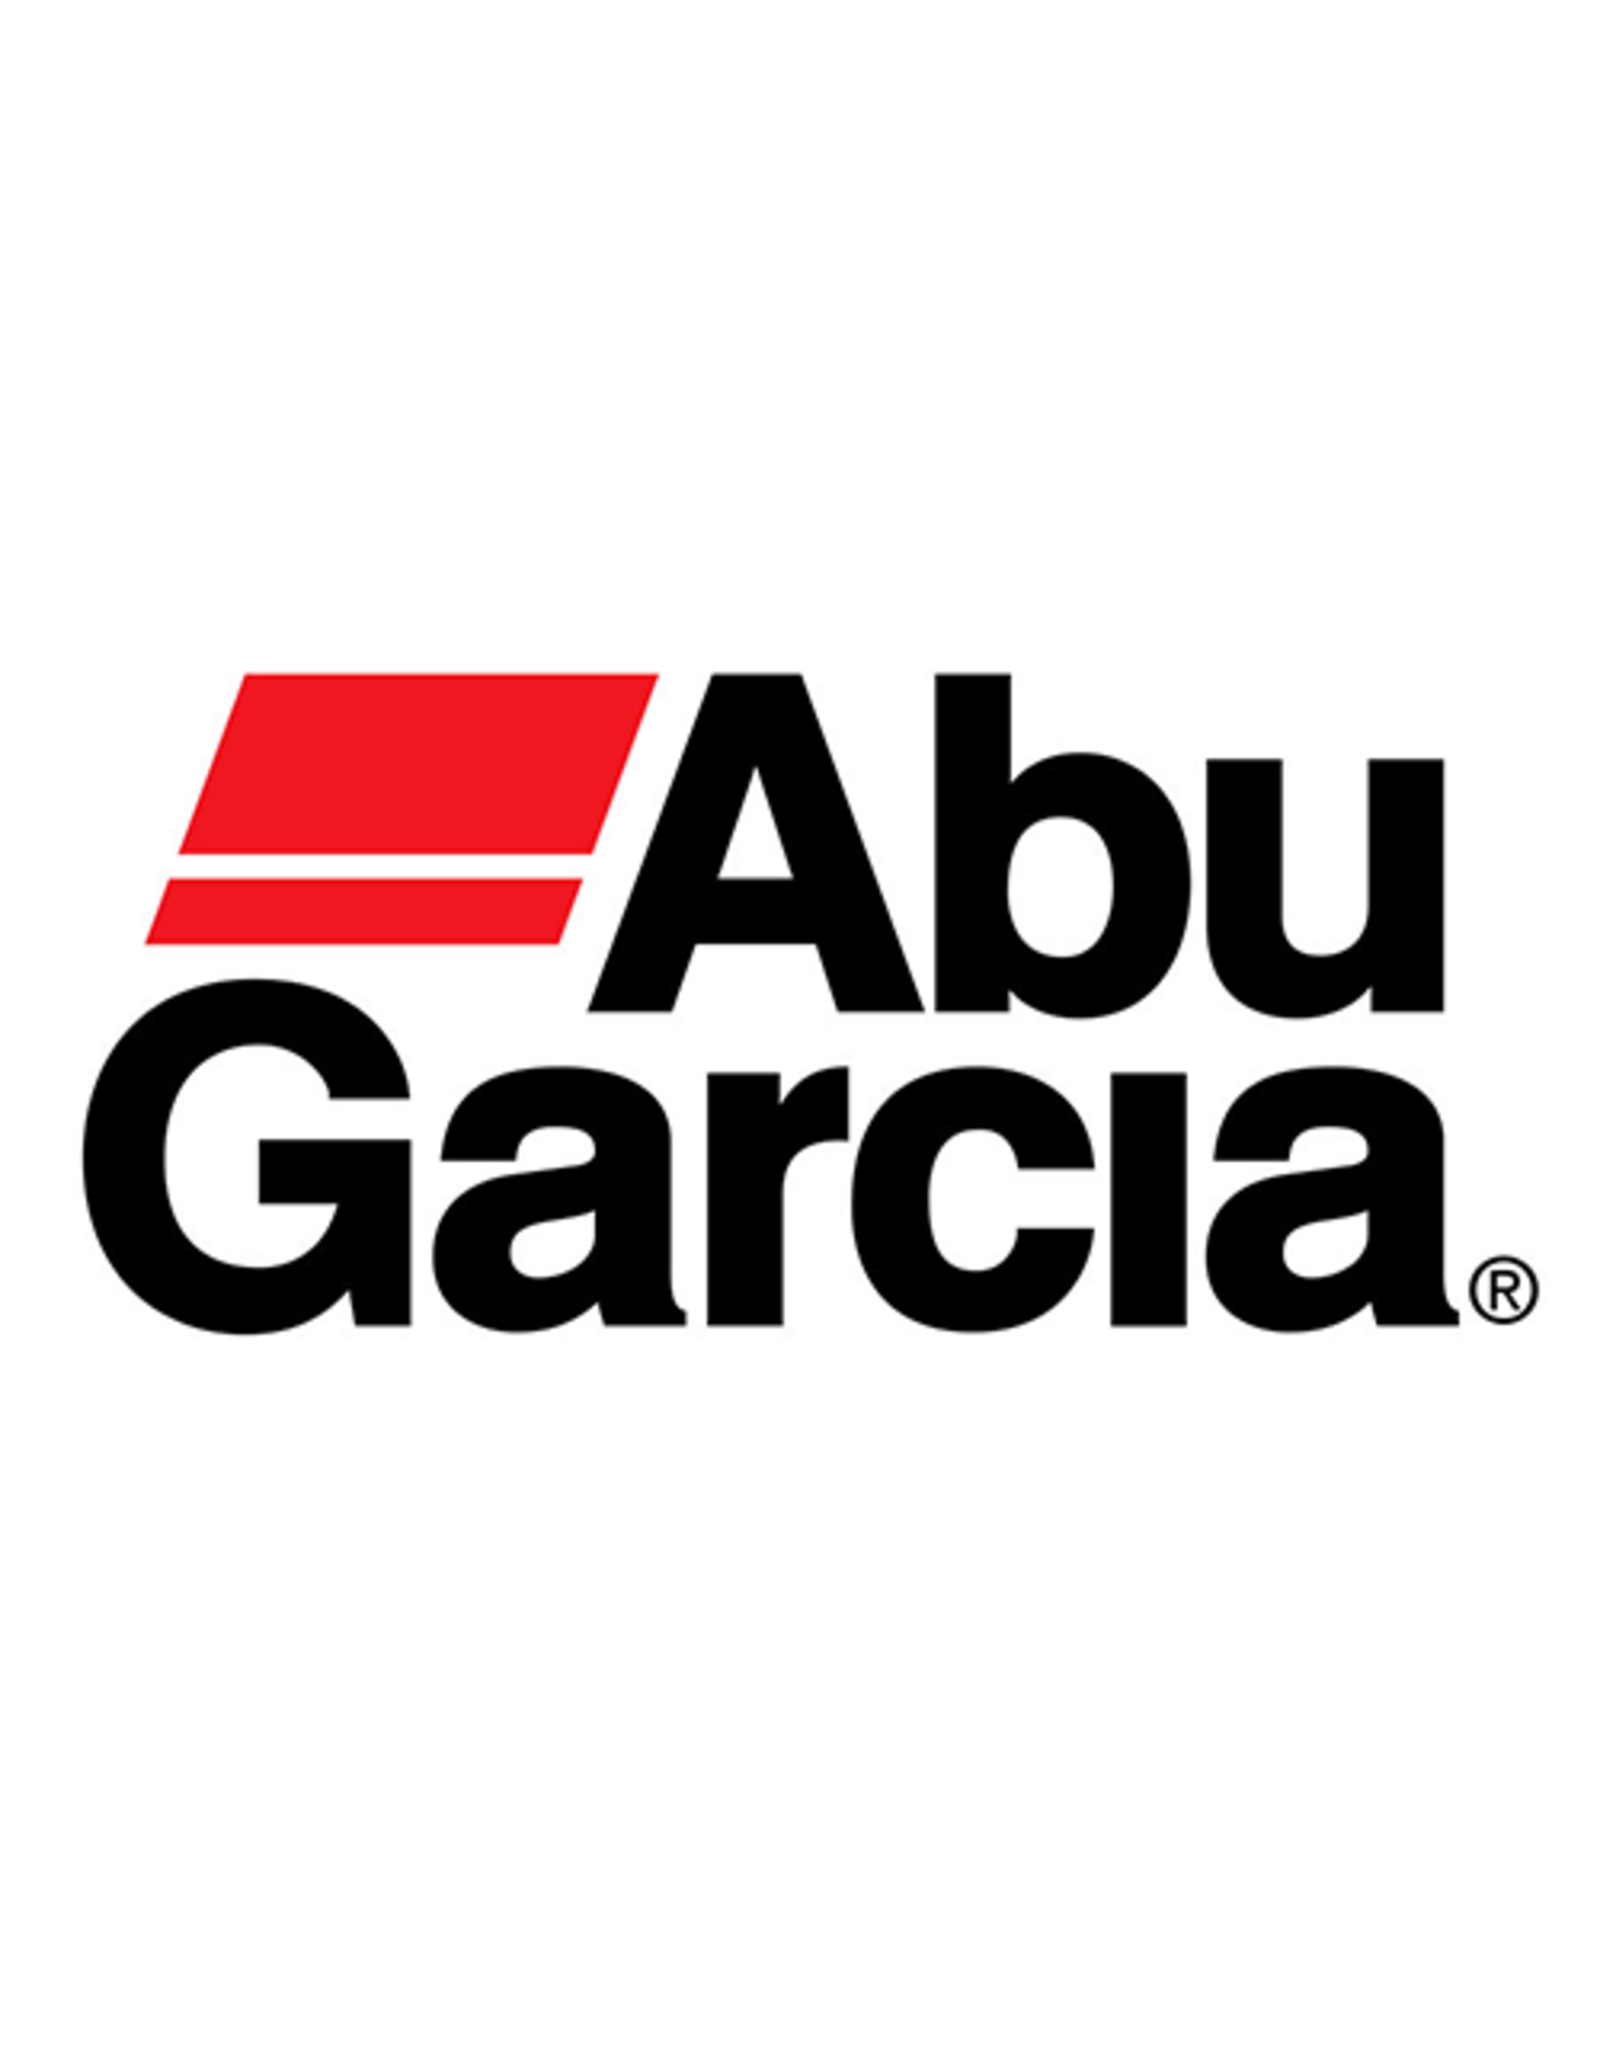 Abu Garcia 1201745  SHEET WASHER